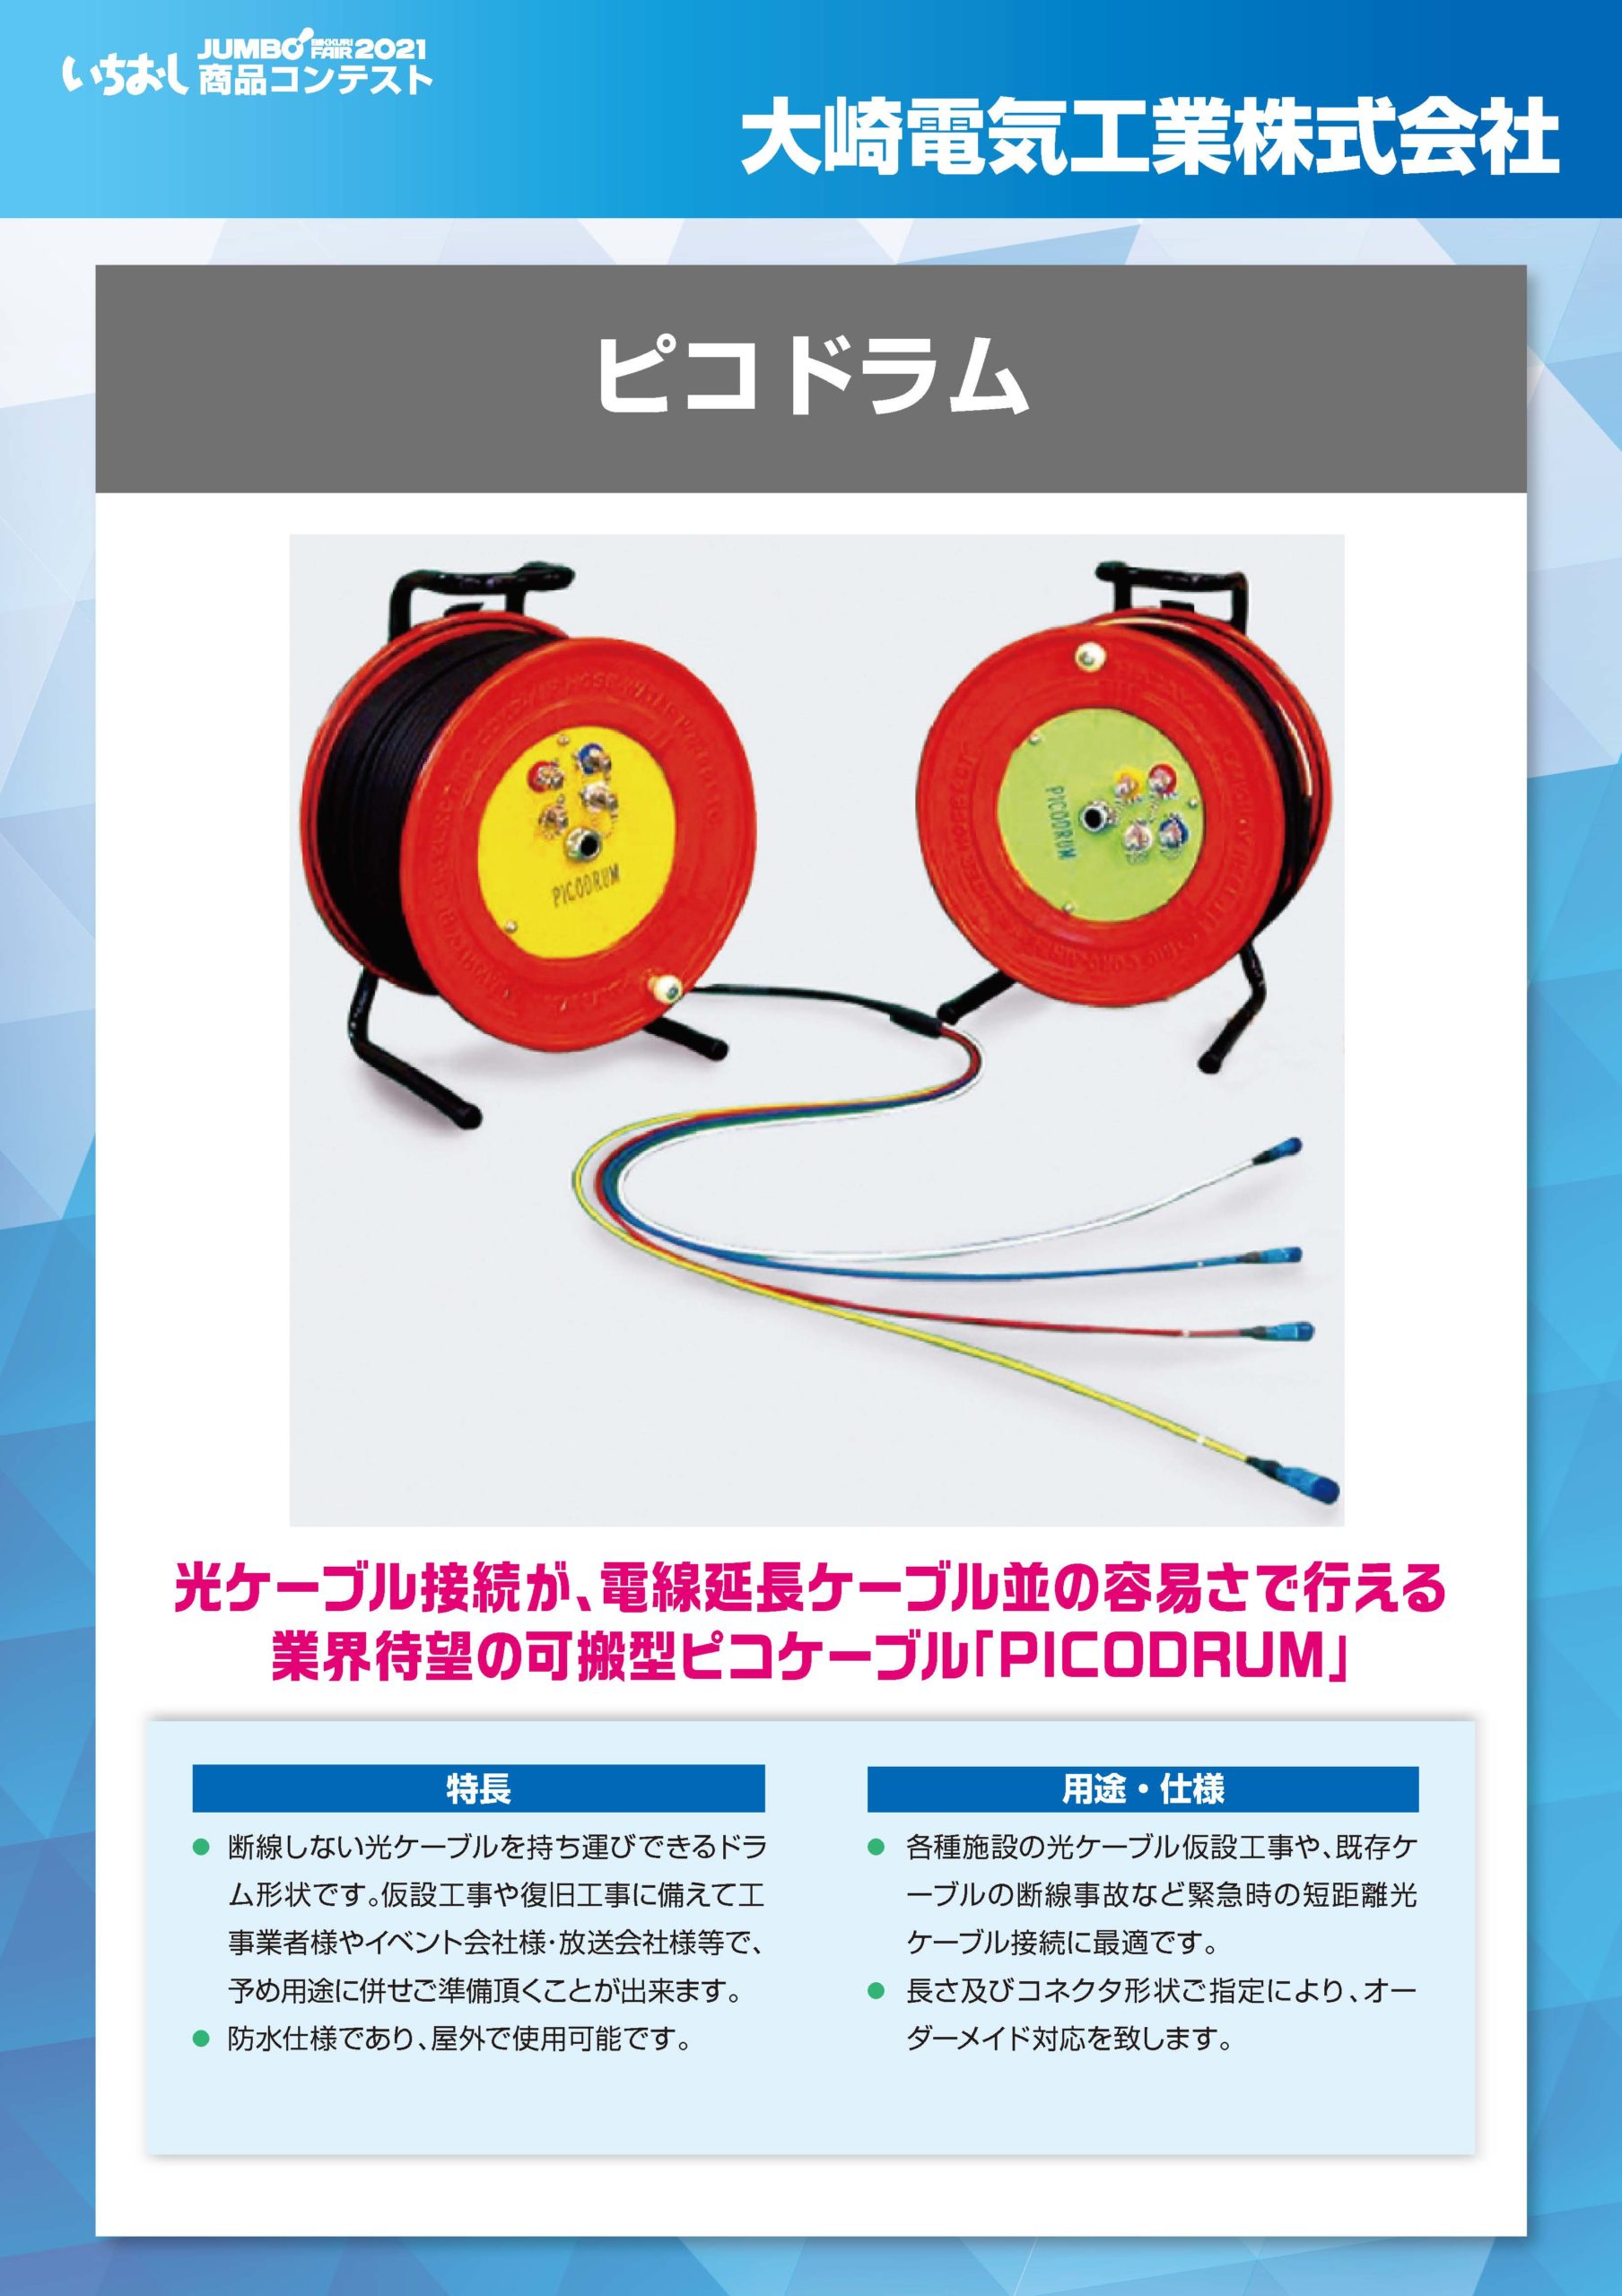 「ピコドラム」大崎電気工業株式会社の画像